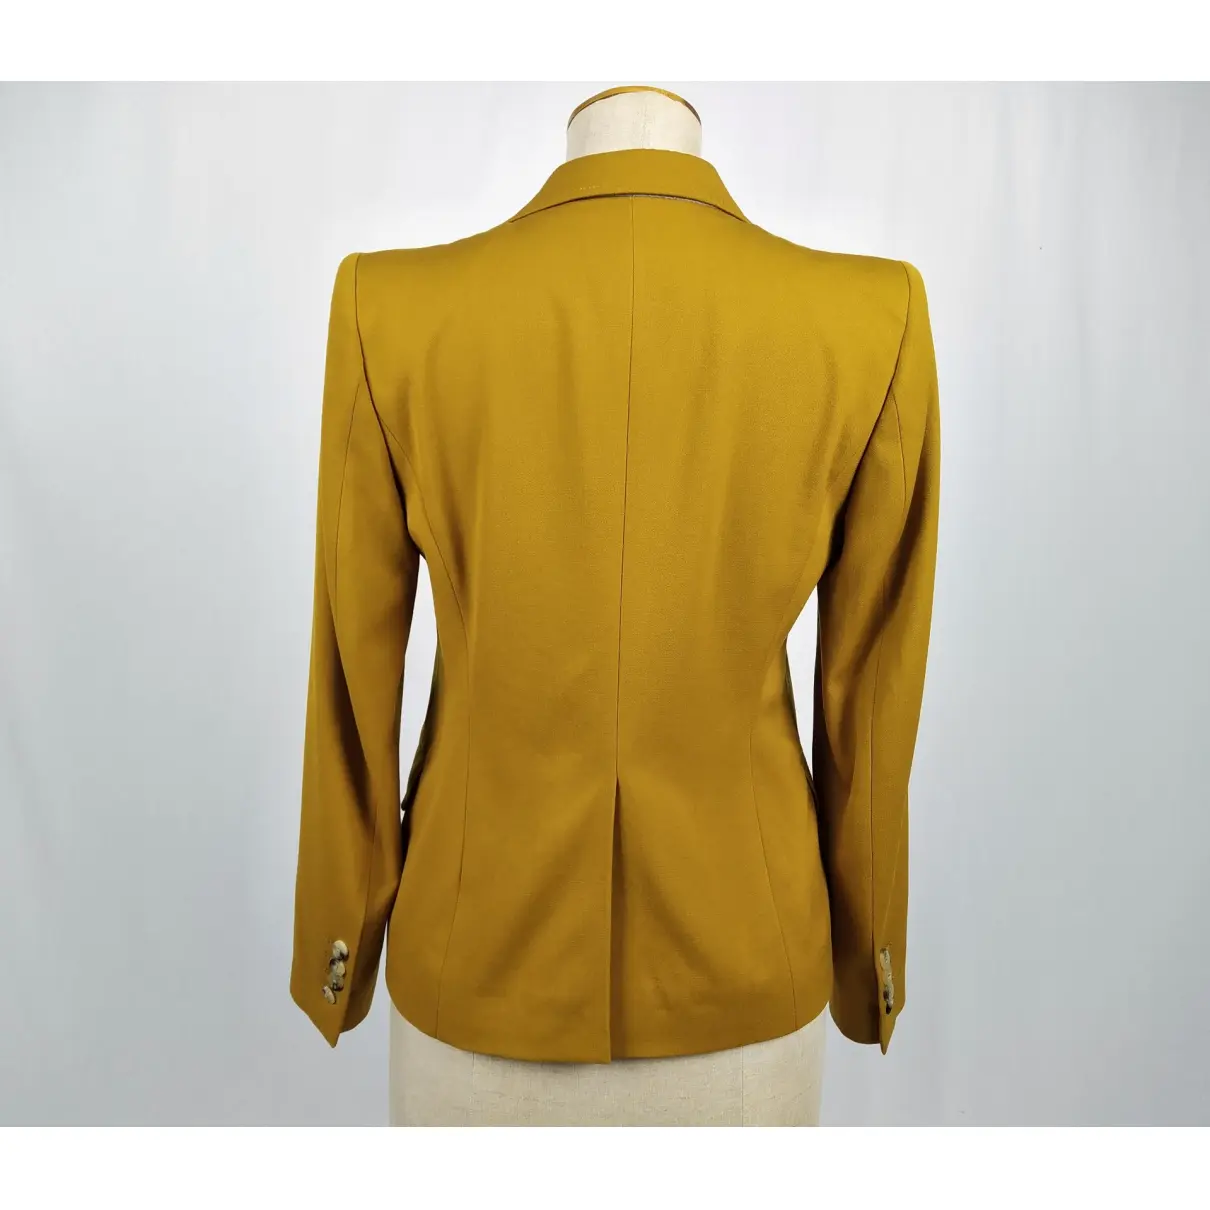 Buy Dries Van Noten Wool suit jacket online